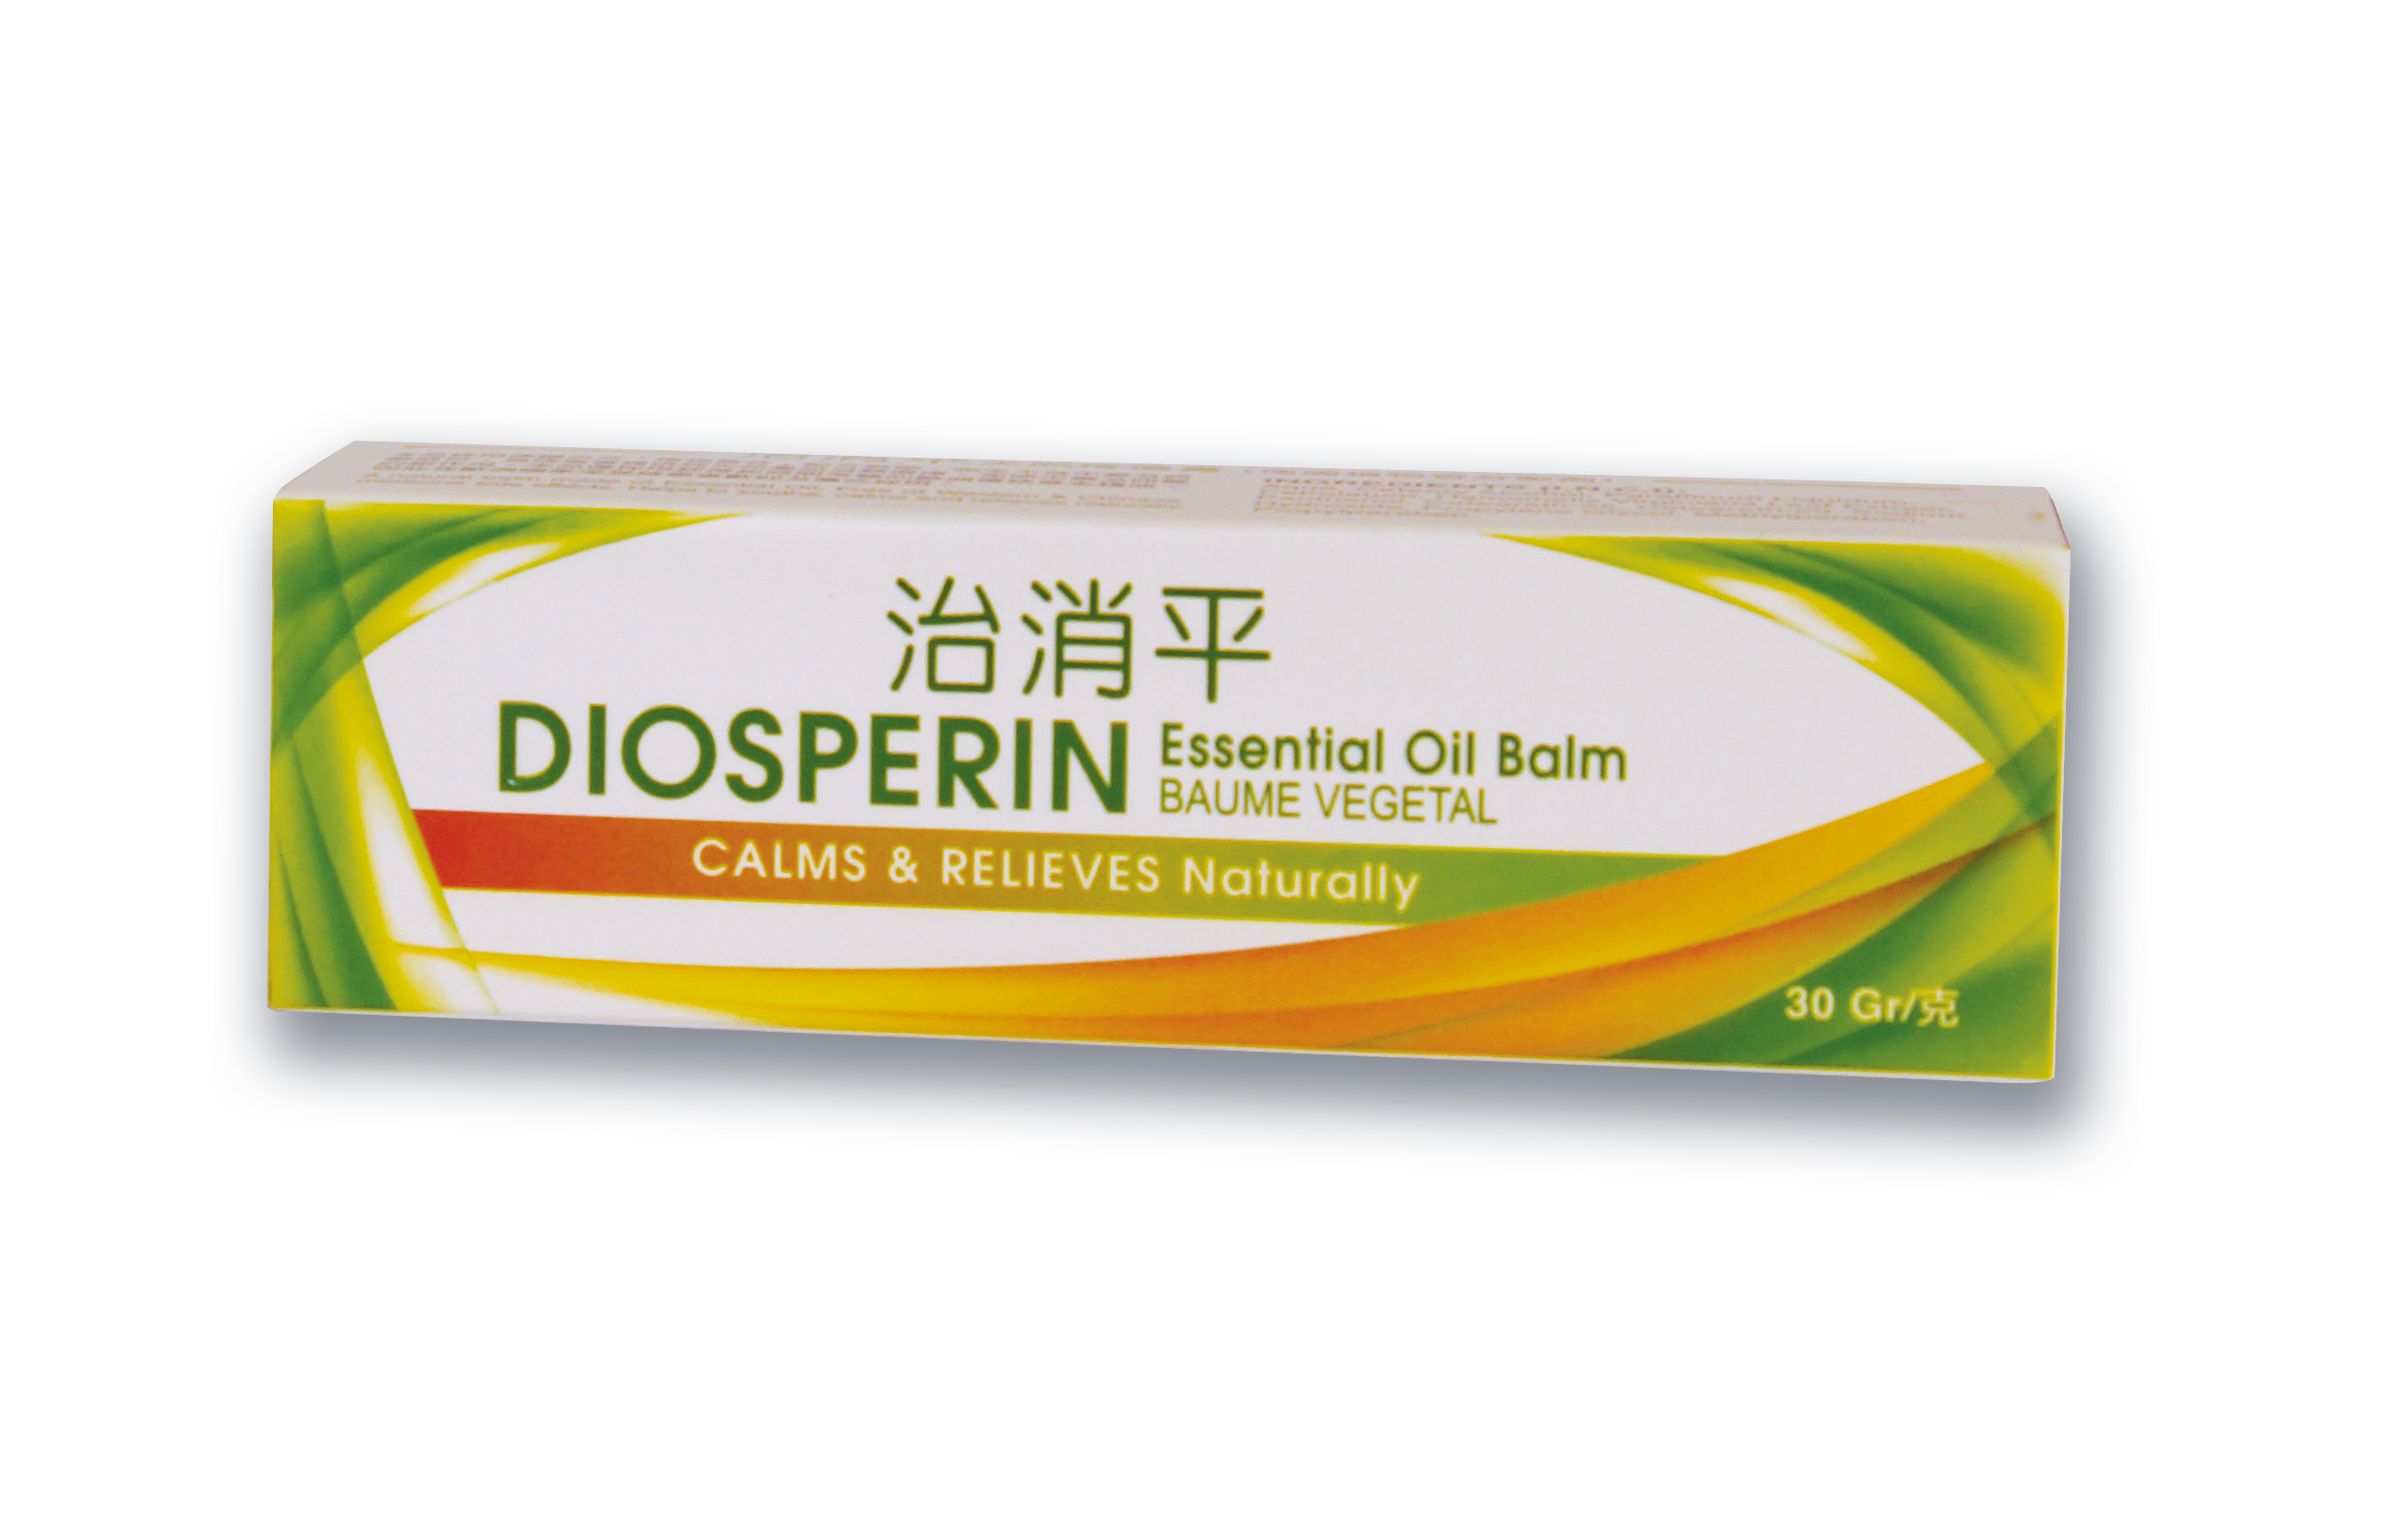 治消平天然痔瘡膏 30g  Diosperin Essential Oil Balm 30g